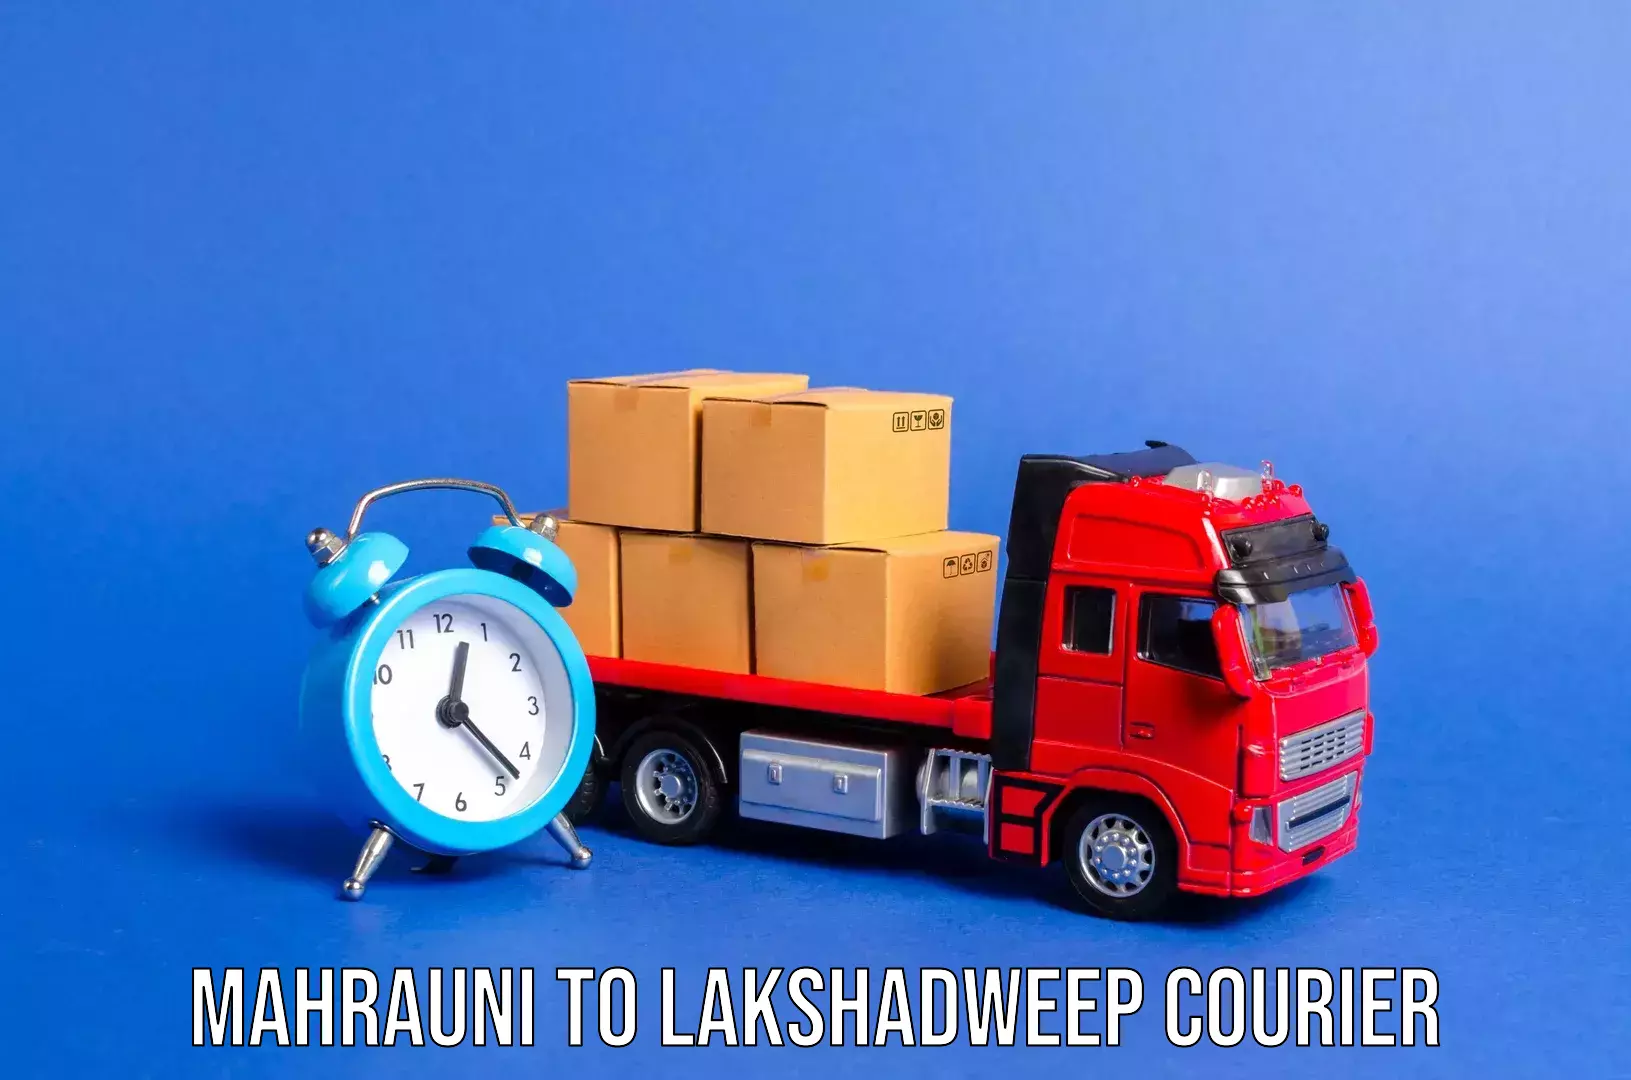 Urgent luggage shipment Mahrauni to Lakshadweep